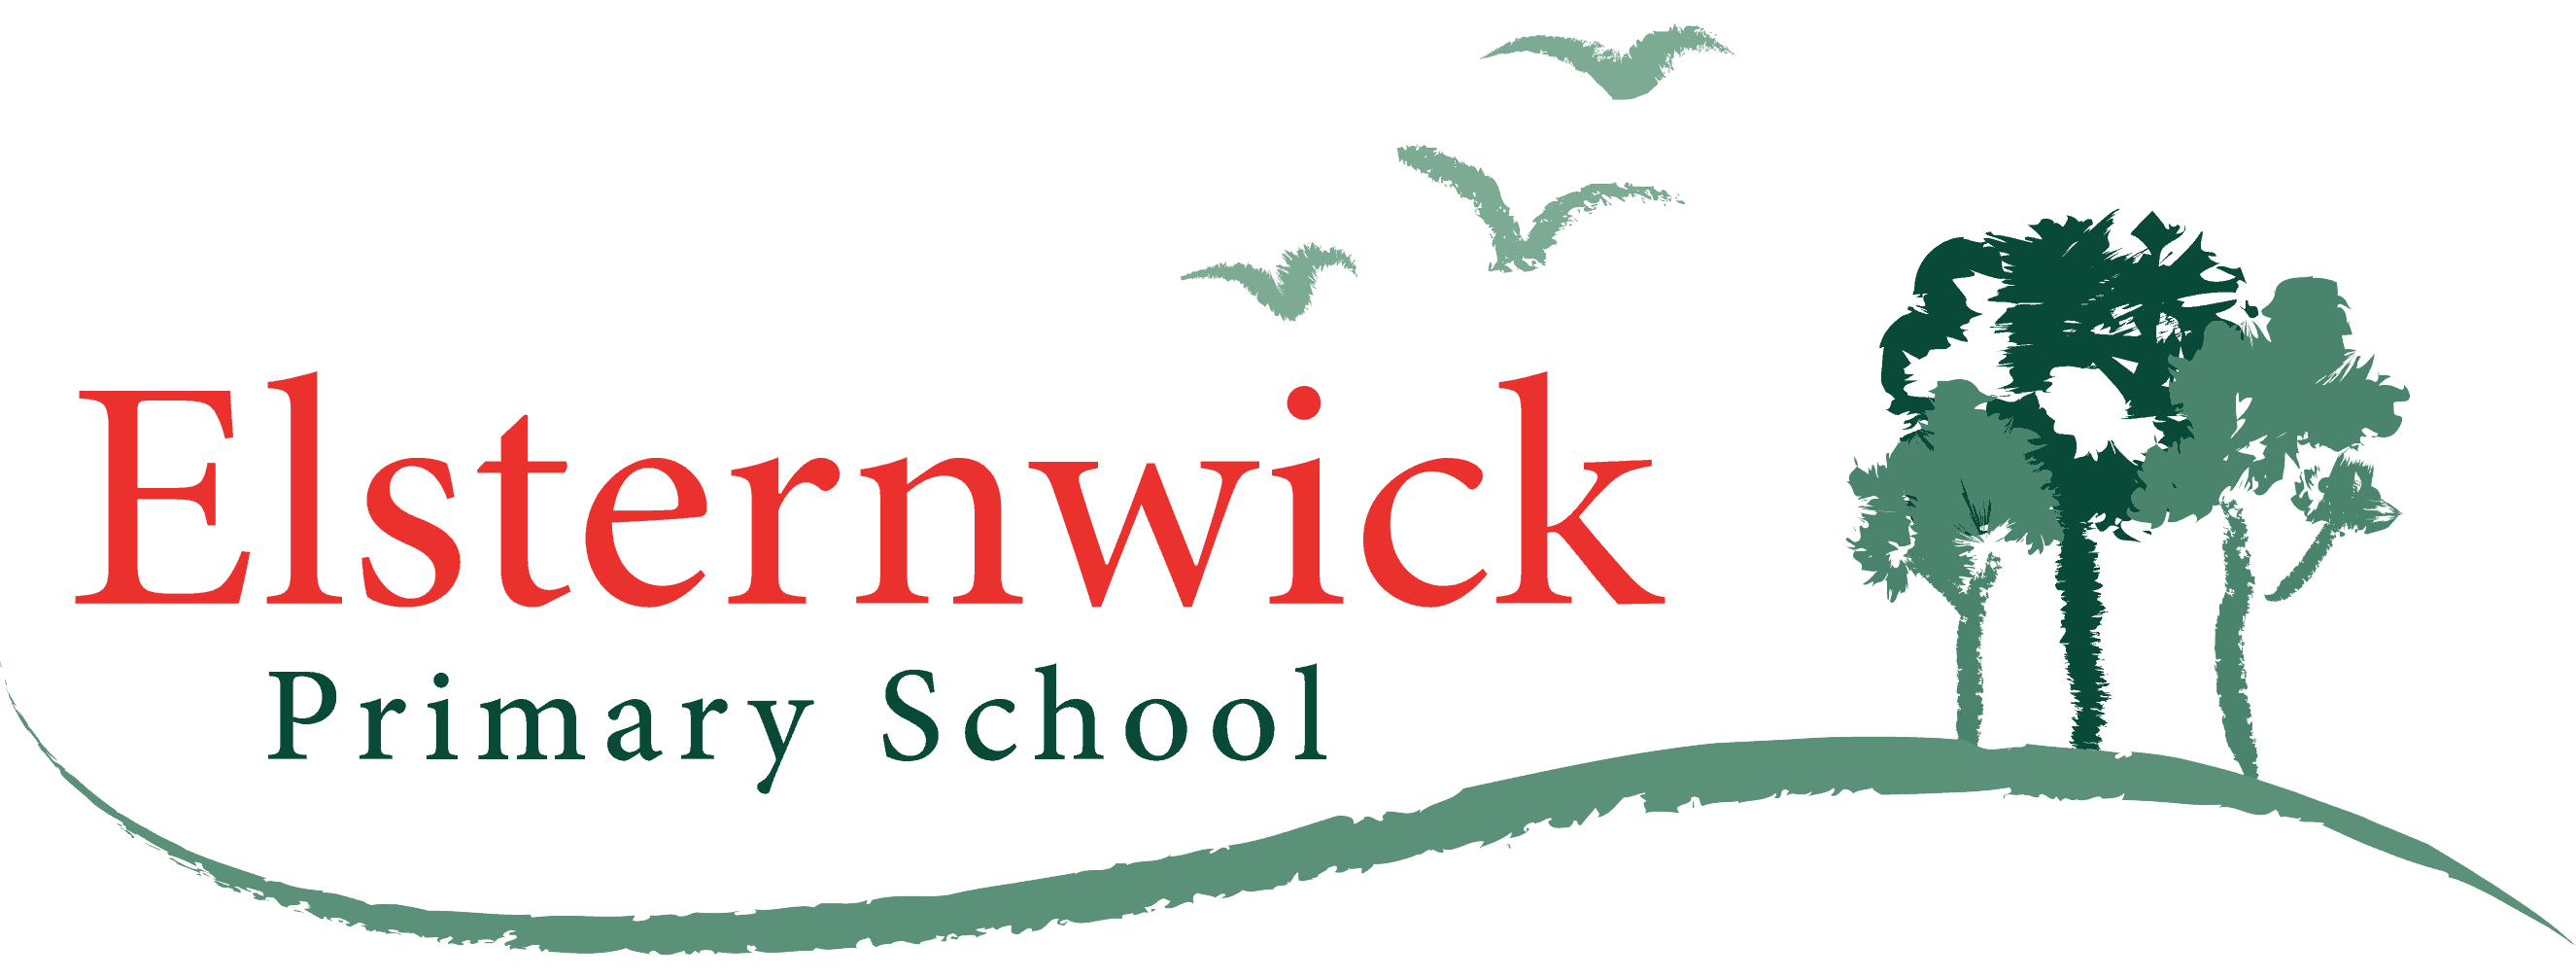 elsternwick primary school logo